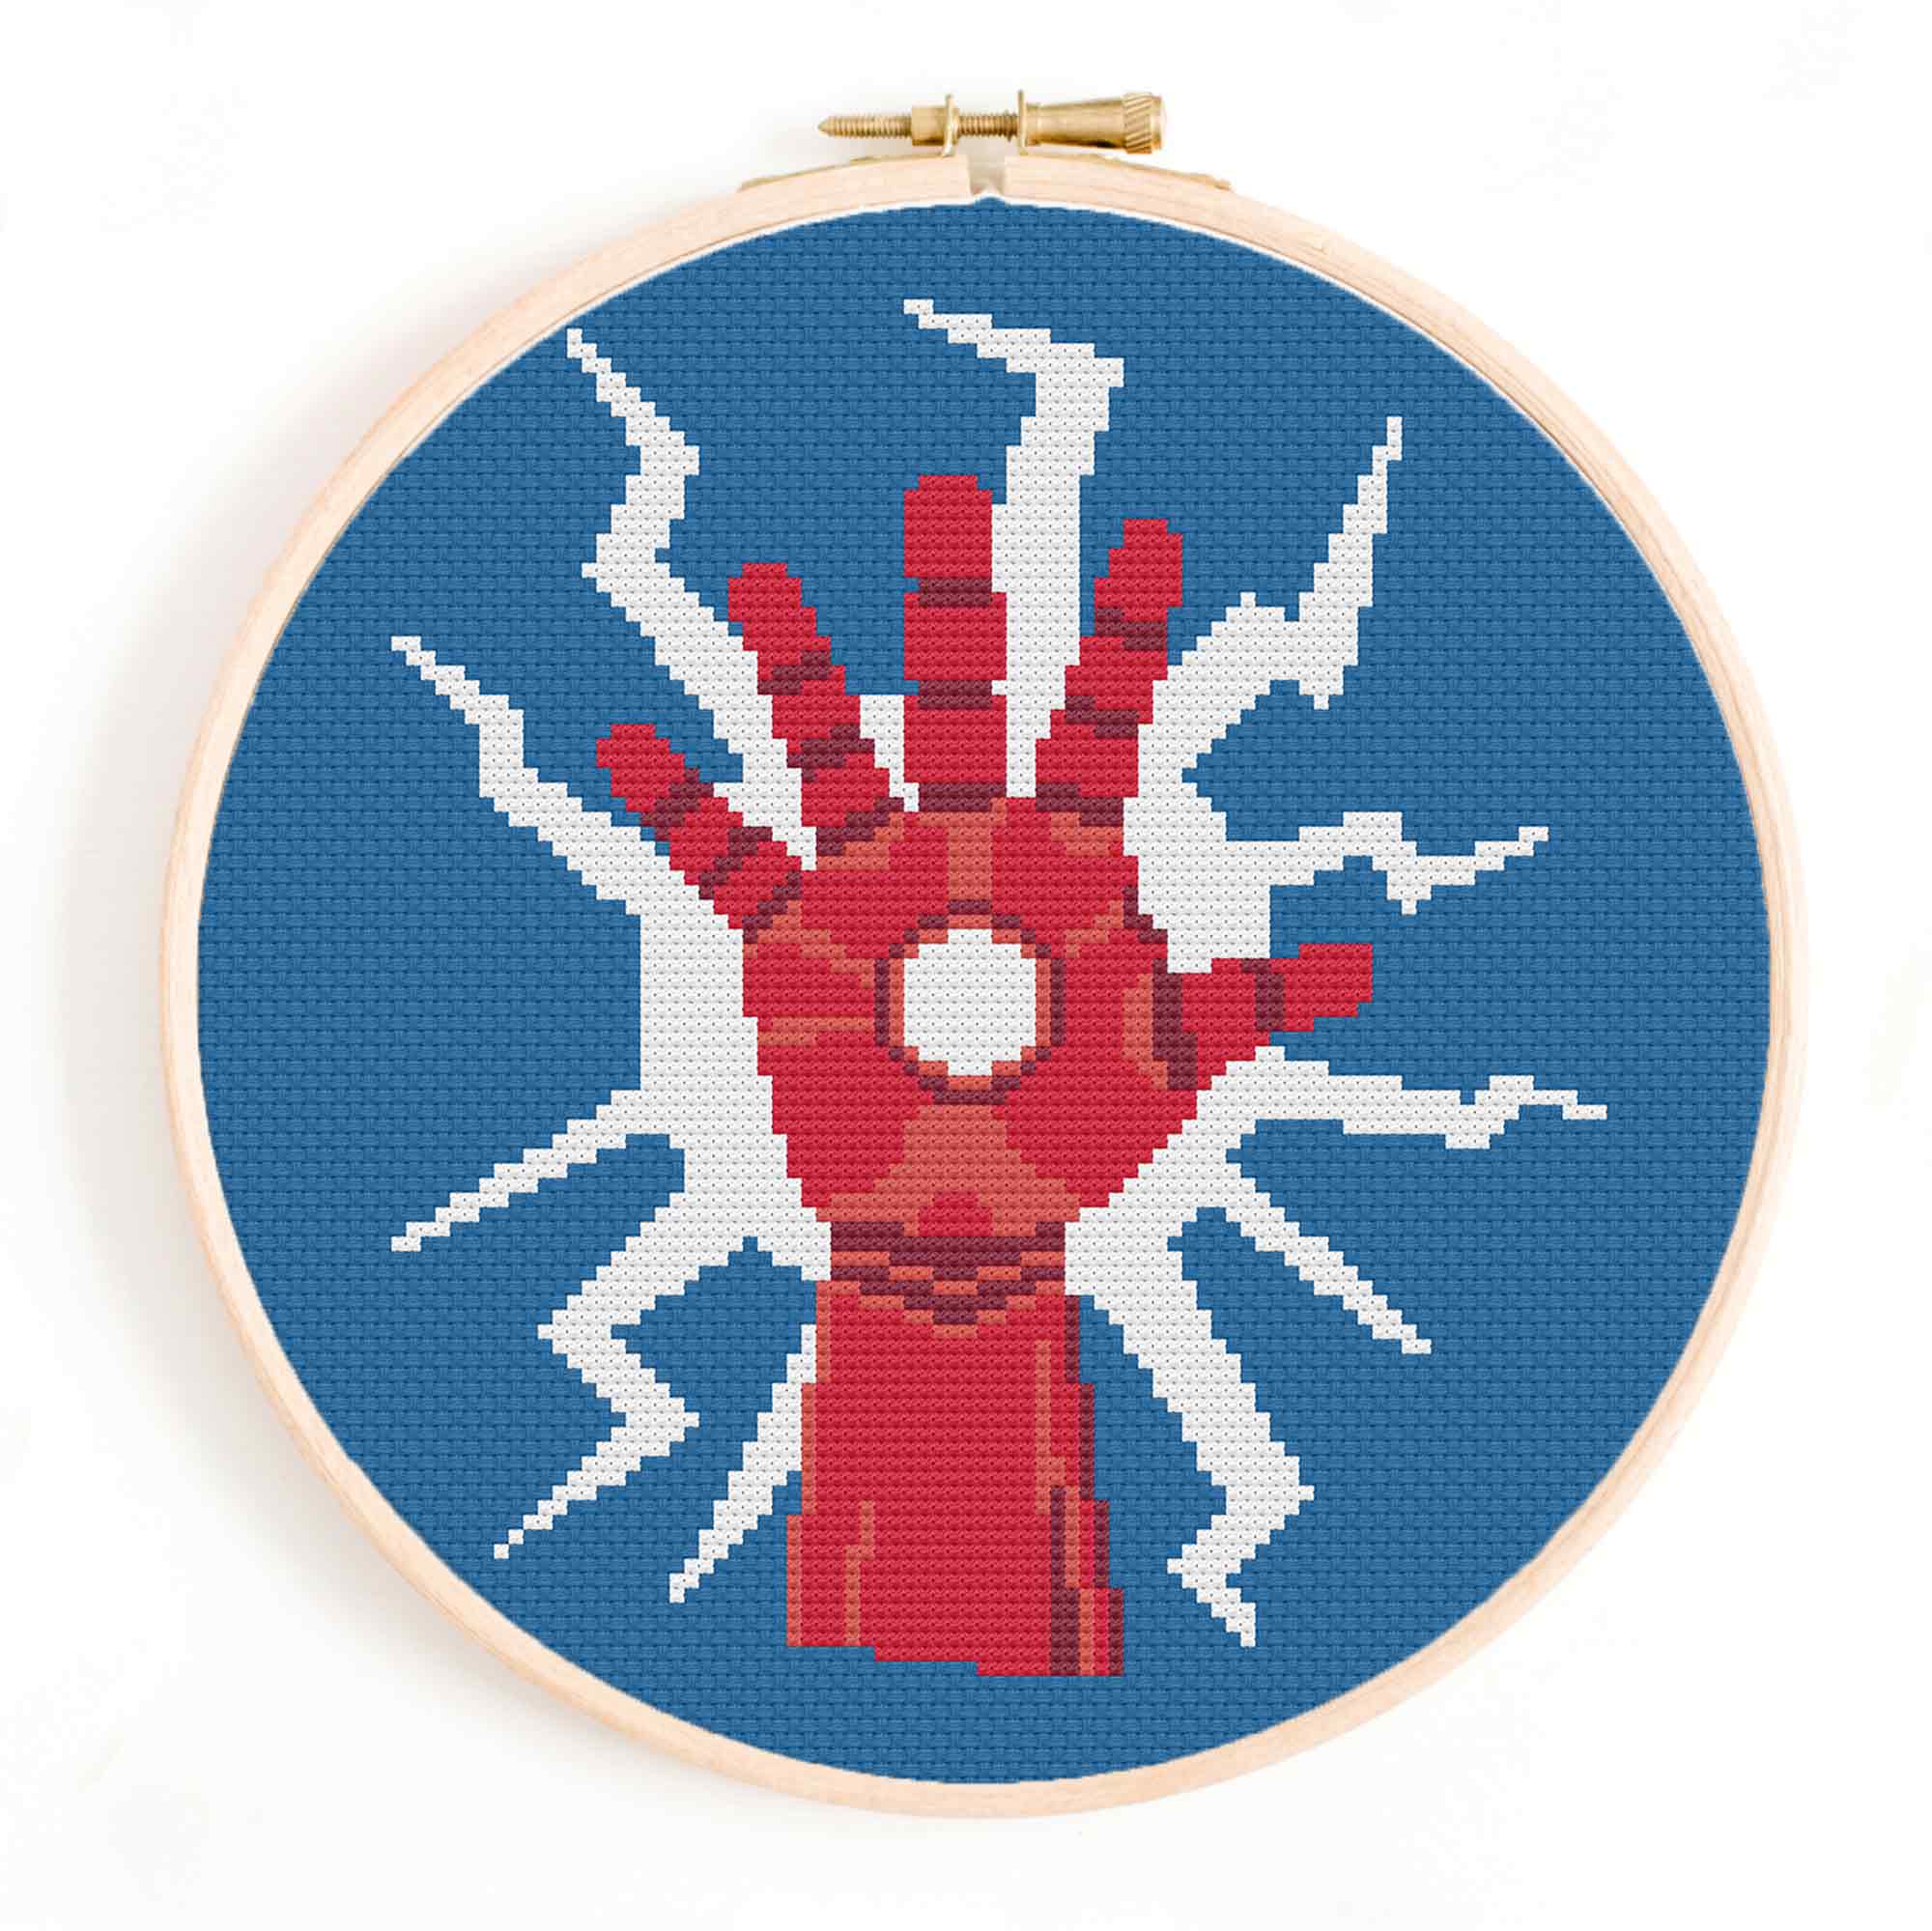 Iron Man Glove Cross Stitch Pattern